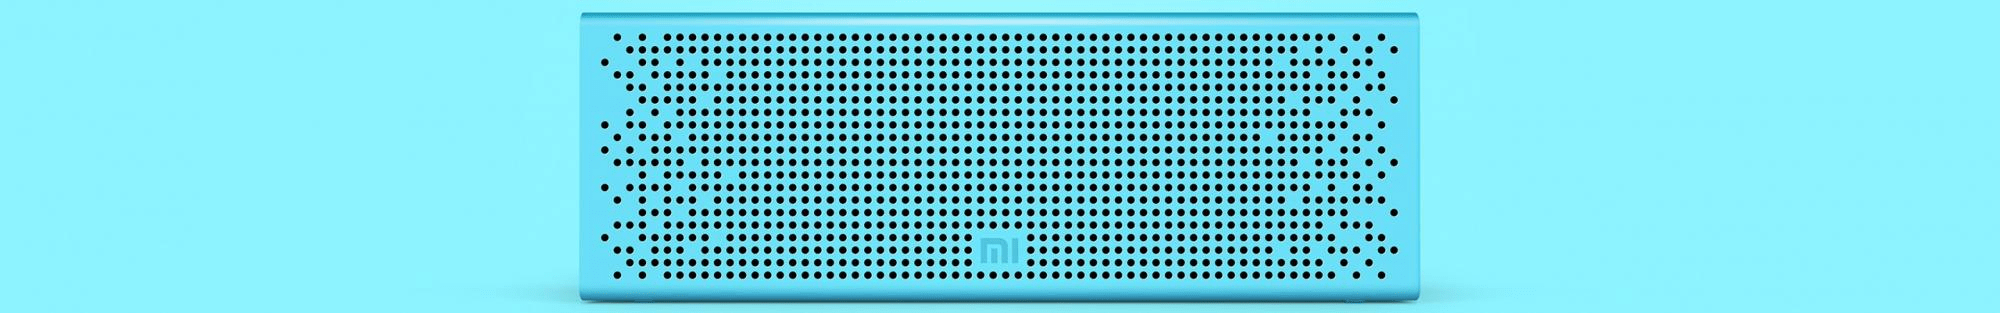 prenosný reproduktor Xiaomi mi Bluetooth speaker s výborným zvukom hliníkové telo 8 h prehrávanie handsfree telefonovanie váha len 270 g stereo zvuk 90 db hlasitosť podpora viacerých režimov prehrávania vhodný pre smartphony tablety televízory notebooky moderný dizajn ľahučké telo automatické zastavenie prehrávania pri prijatie hovoru laserové gravírovanie metalický lesk duálne 36mm ovládače rozsah porovnateľný s hifi systémom basový radiátor procesor Avner vyvážený zvuk max hlasitosť aj pri slabej batérii